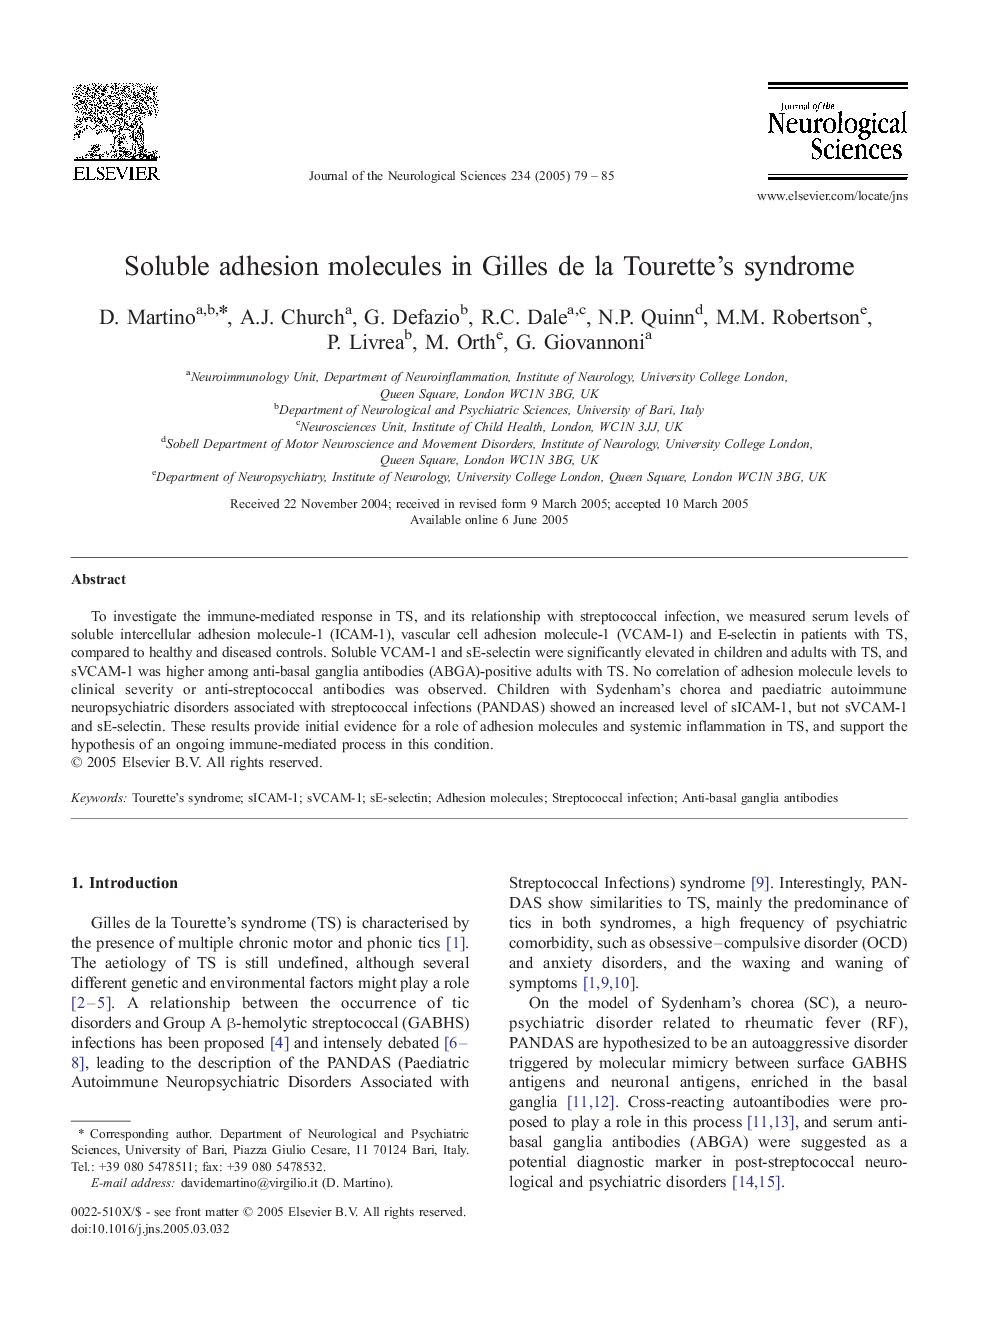 Soluble adhesion molecules in Gilles de la Tourette's syndrome